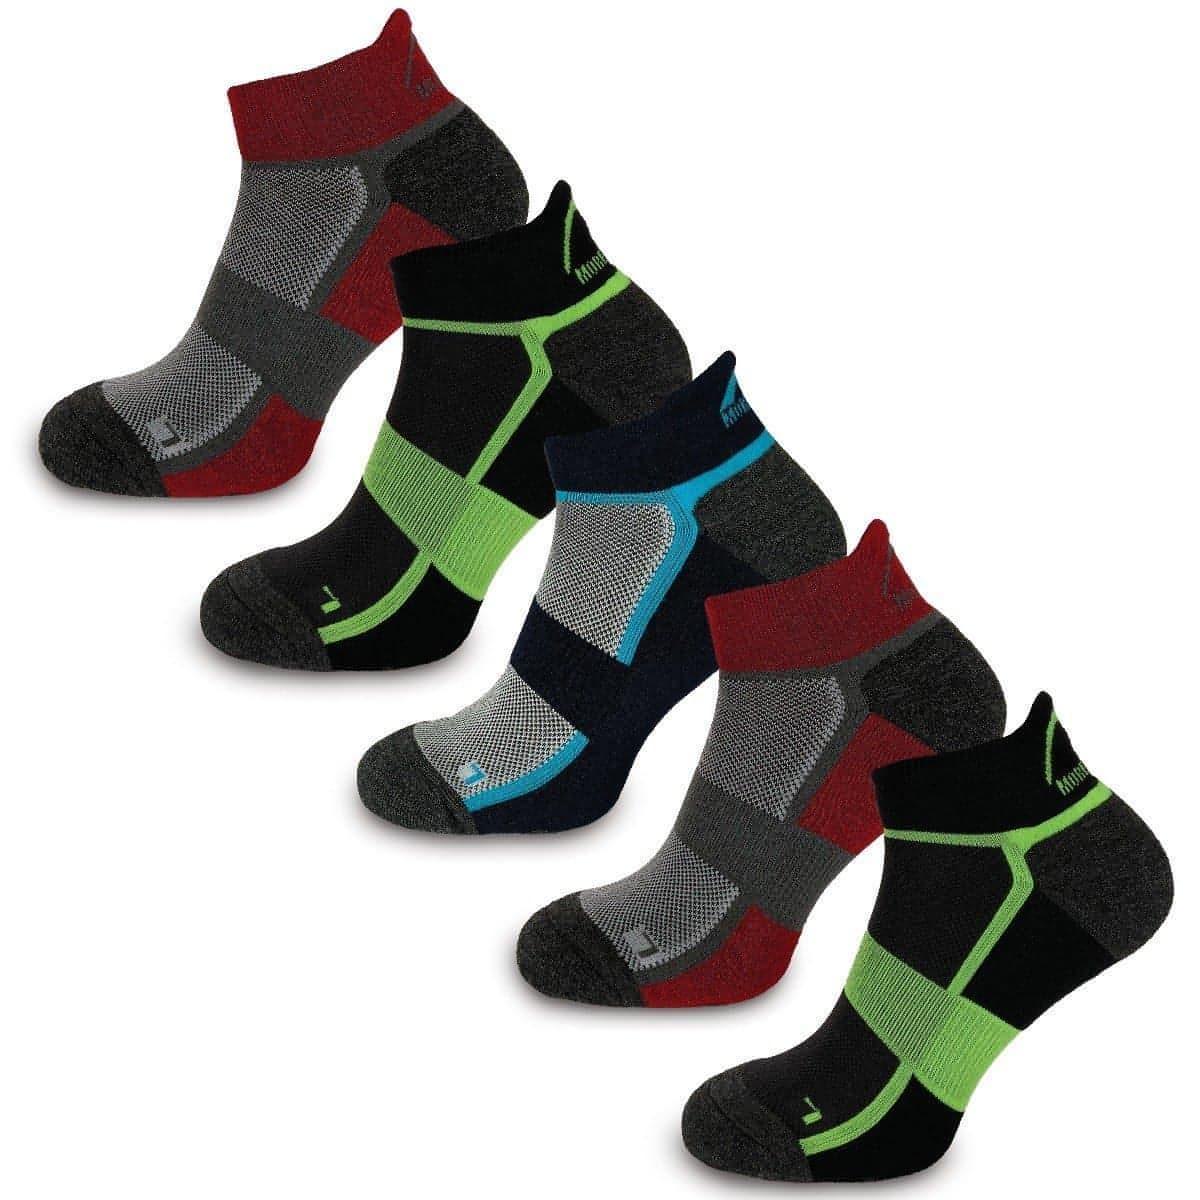 More Mile Bamboo Comfort (5 Pack) Running Socks – Start Fitness